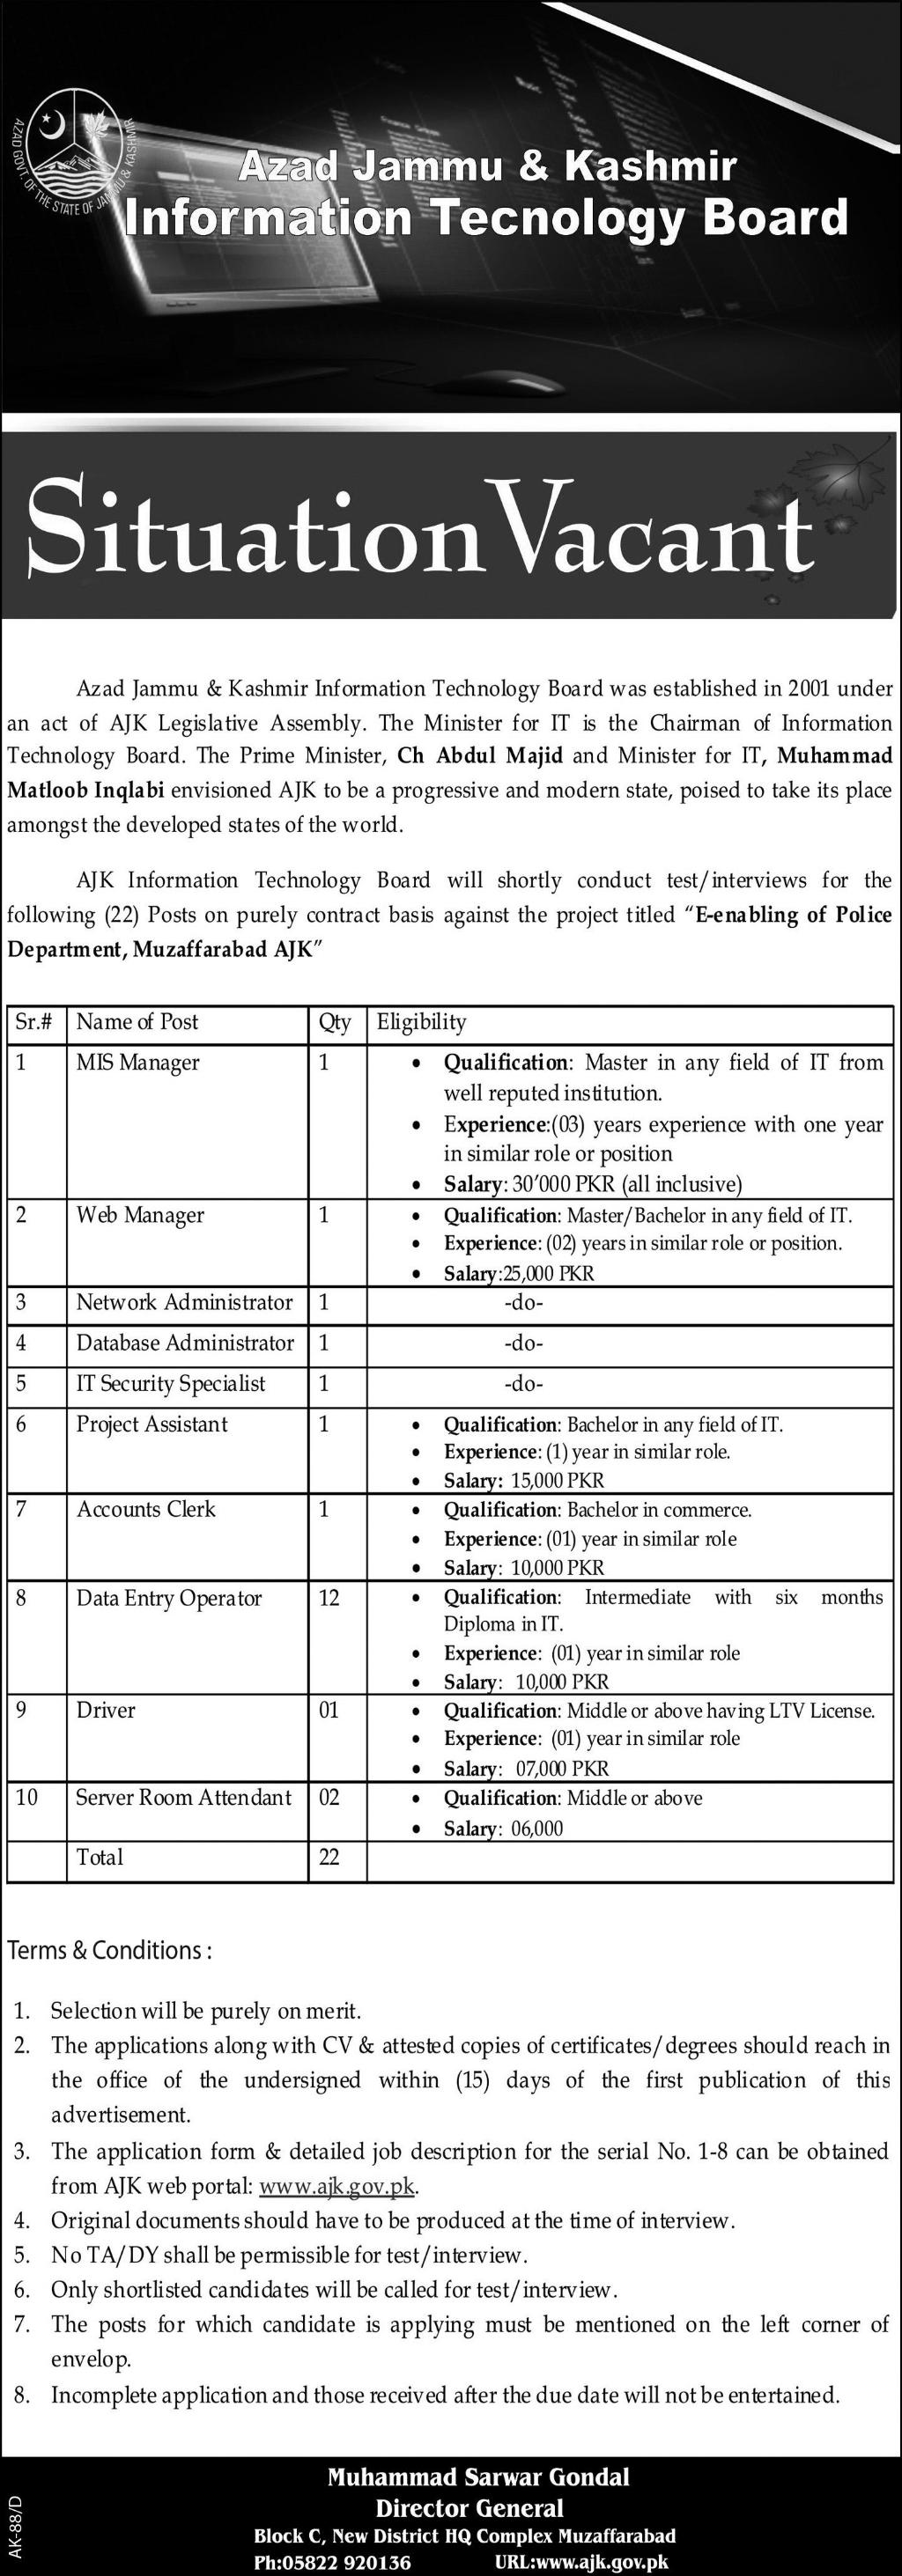 Azad Jammu & Kashmir Information Technology Board Jobs Opportunities